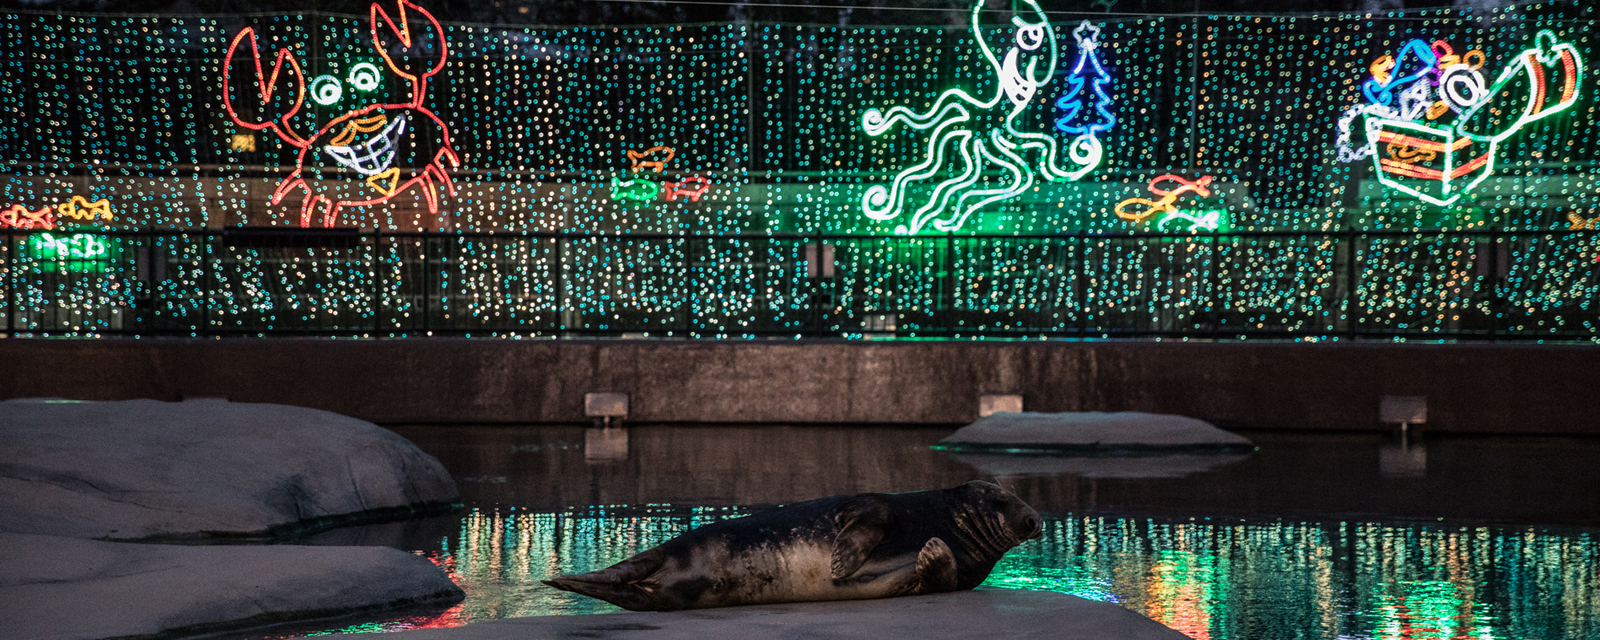 seal with Christmas lights